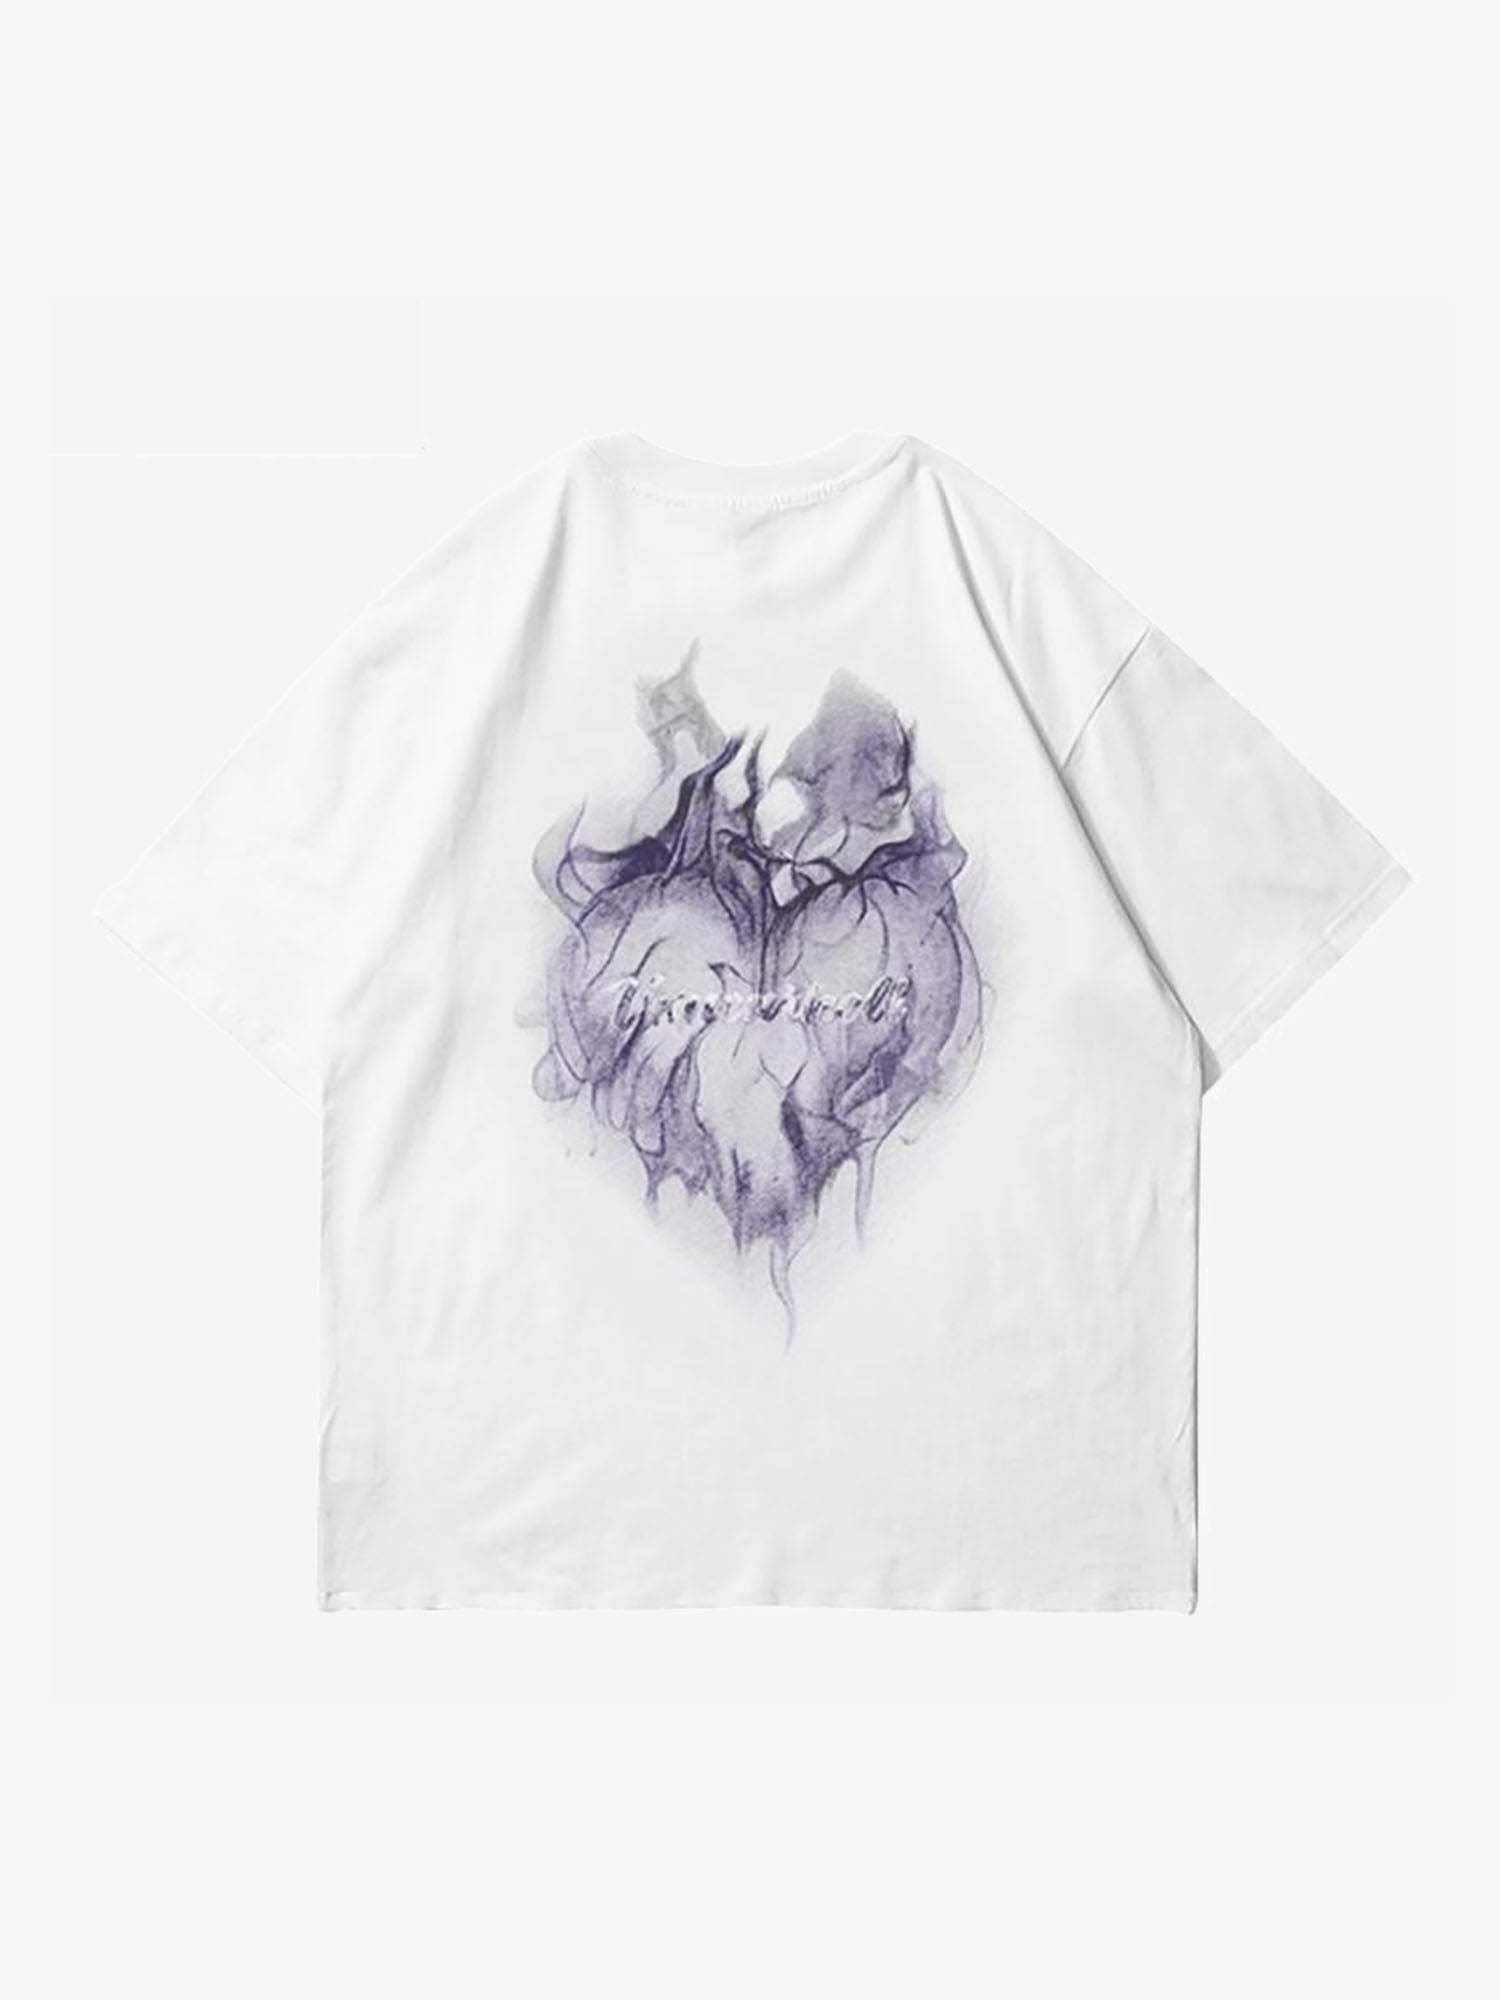 Justnotag T-shirt a maniche corte con stampa fiammeggiante a forma di cuore